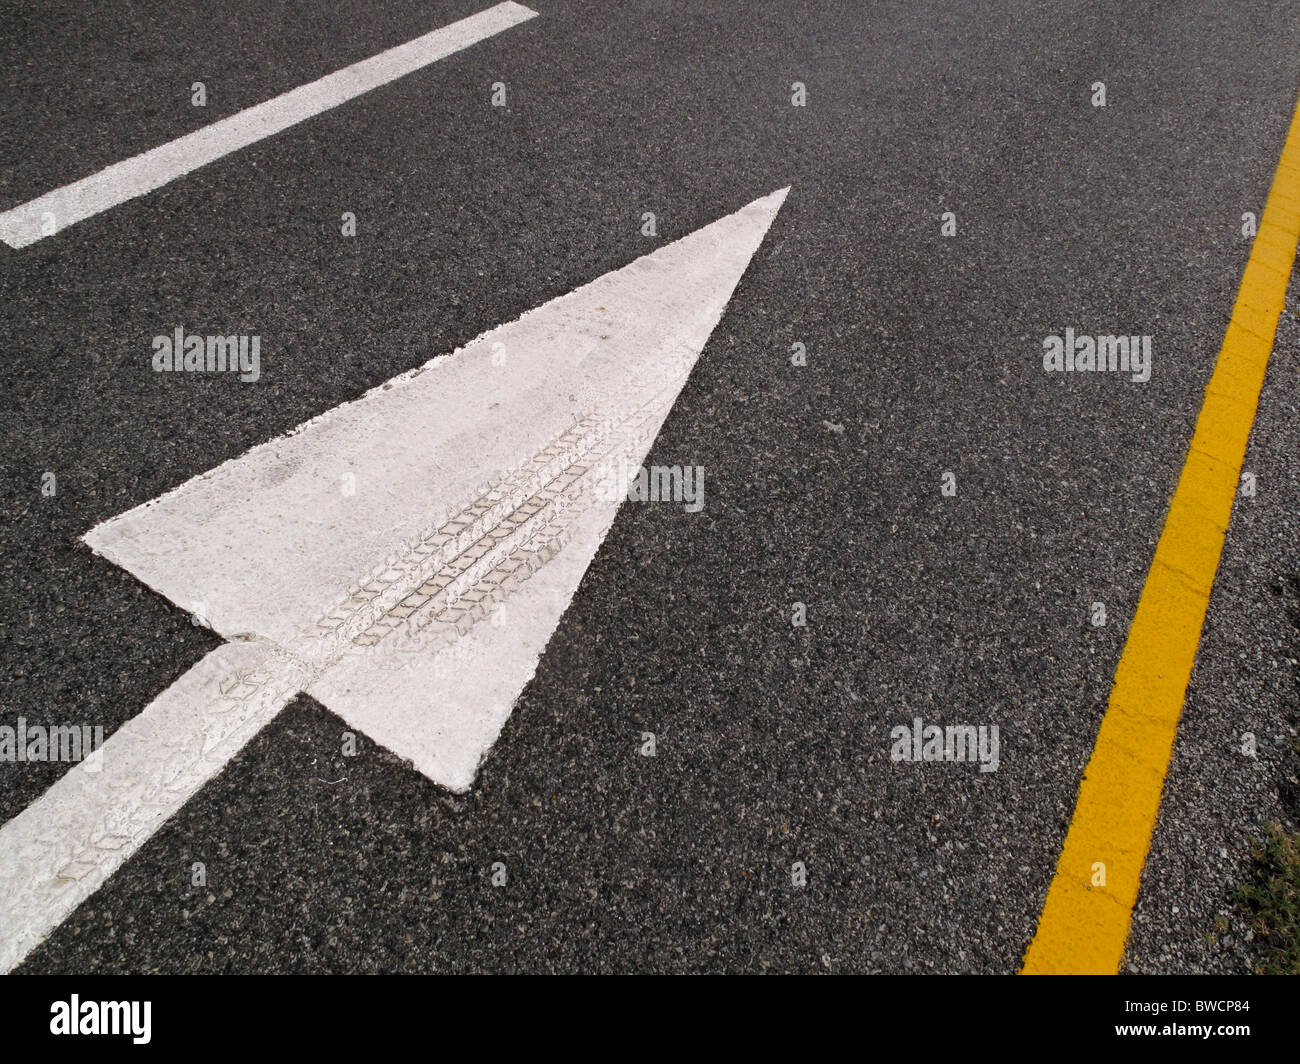 Freccia bianca sulla strada che indica la direzione per il traffico a seguire. Marchio di pneumatici integrati in vernice sulla freccia. Foto Stock